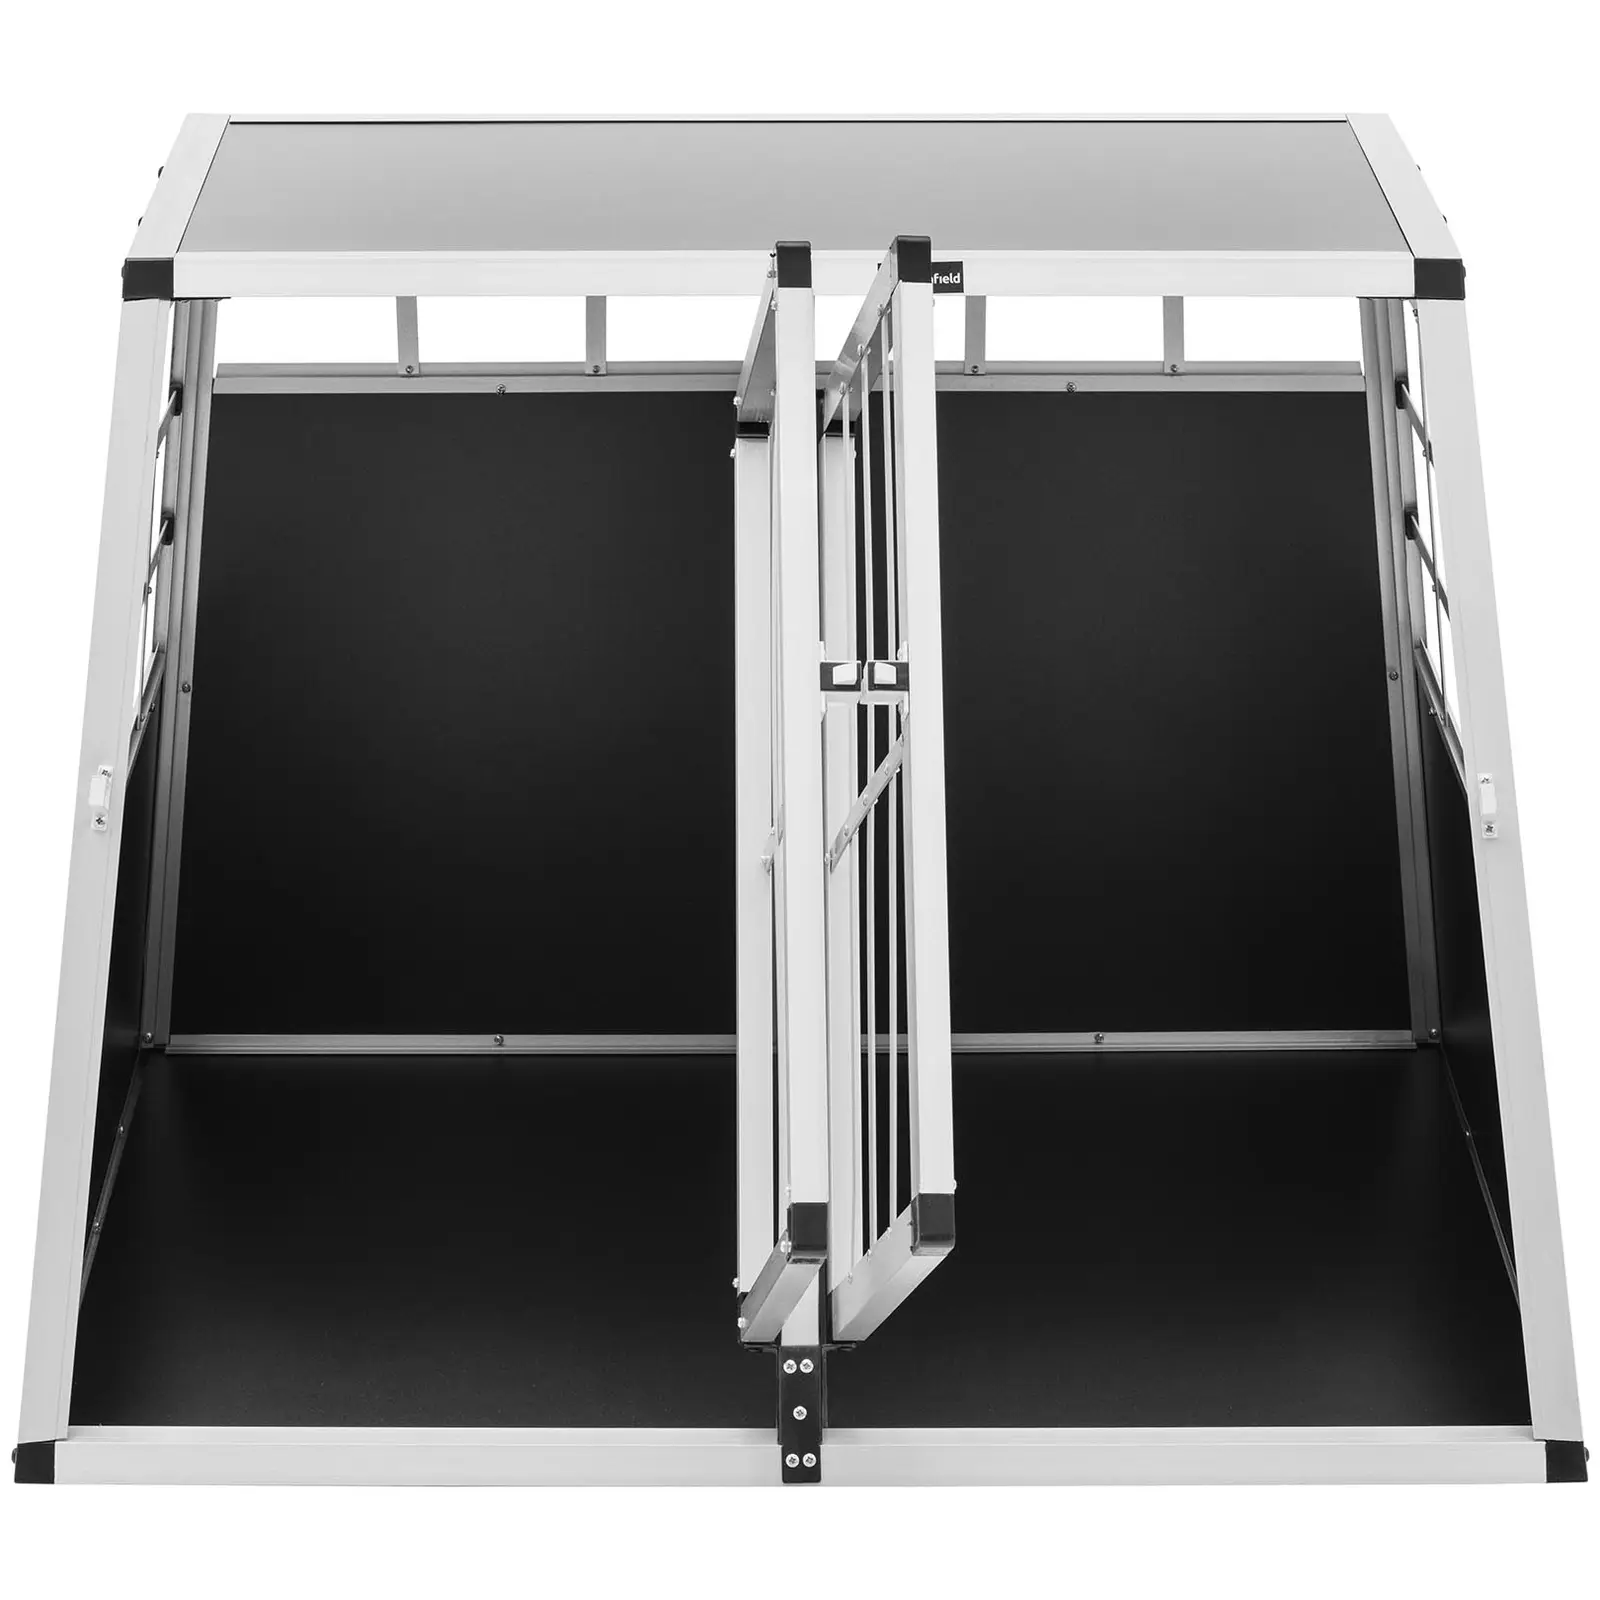 Caisse de transport pour chien - Aluminium - Forme trapèze - 95 x 85 x 70 cm - avec séparation